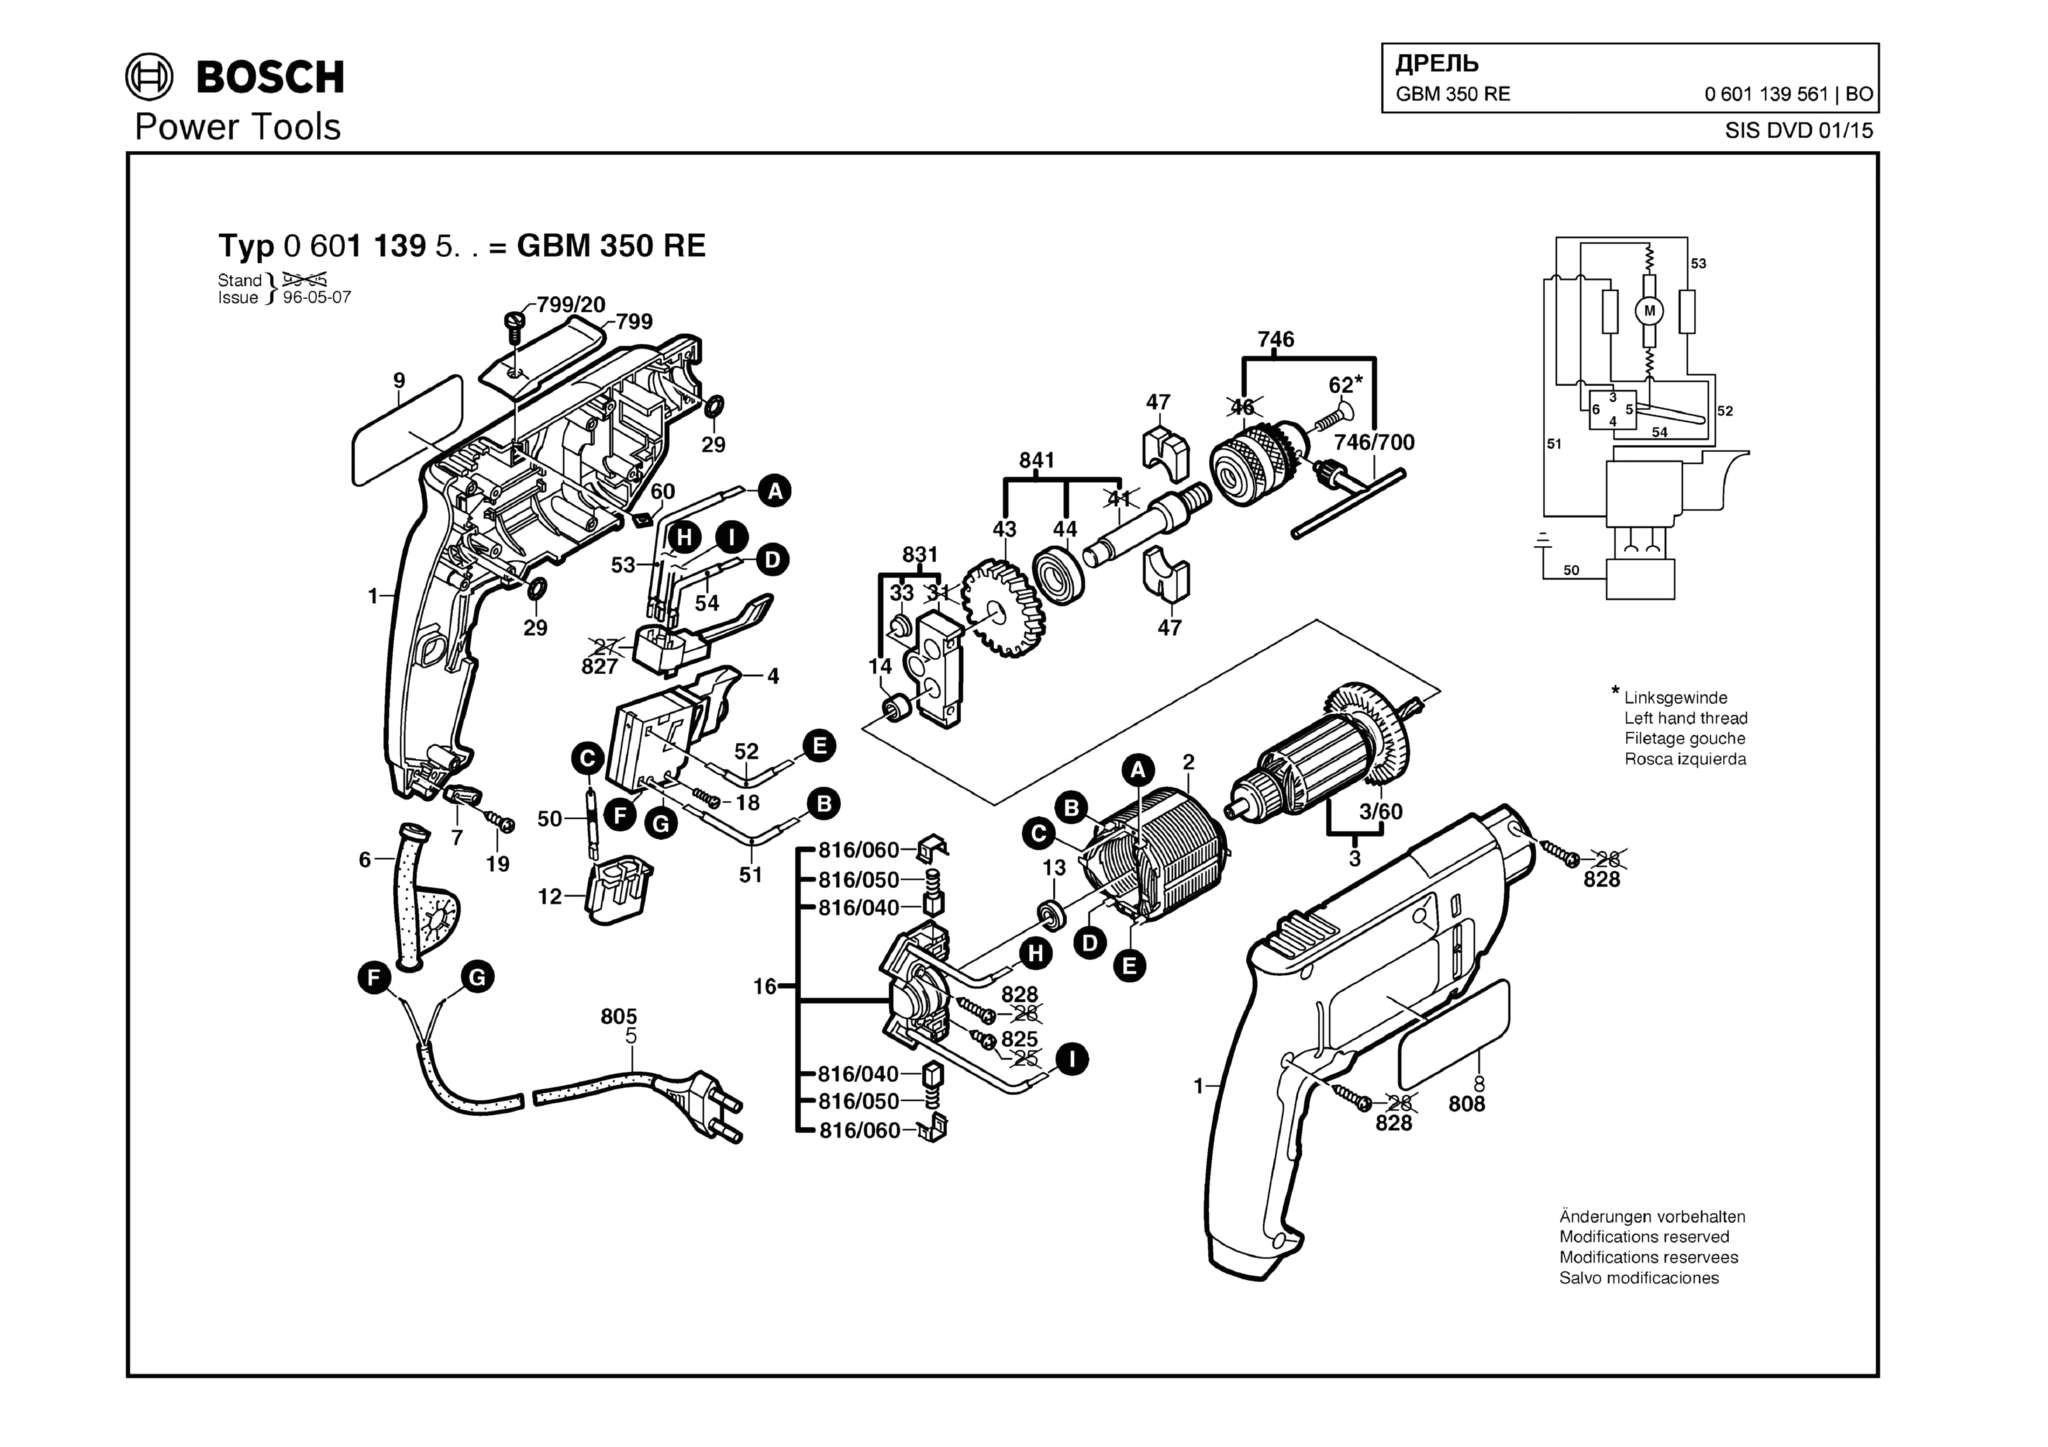 Запчасти, схема и деталировка Bosch GBM 350 RE (ТИП 0601139561)